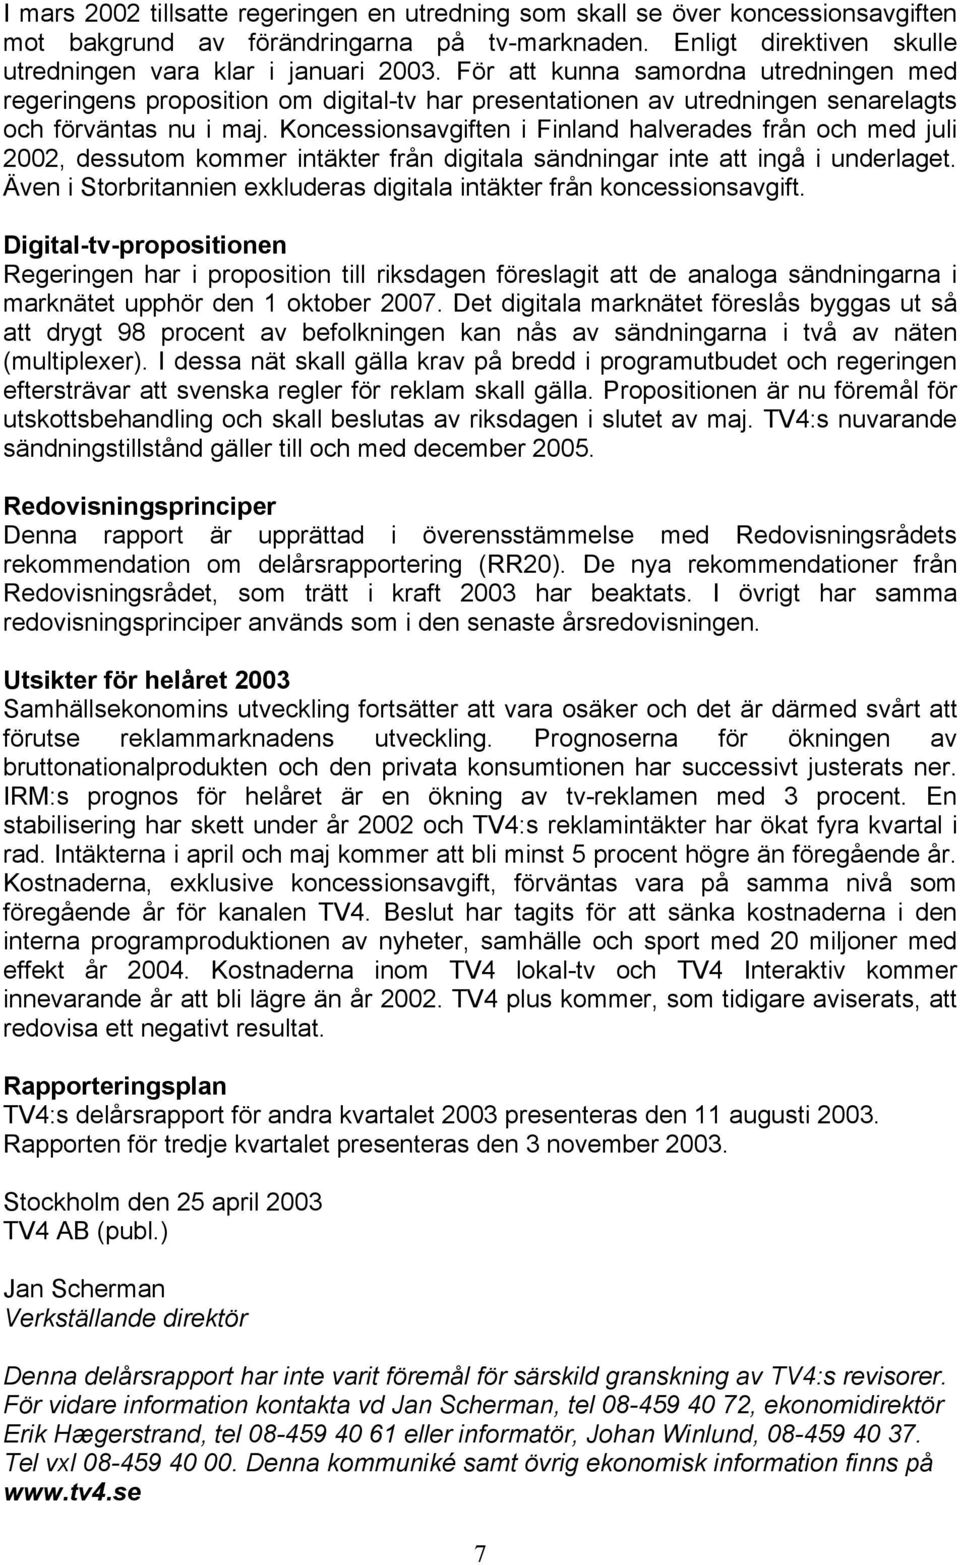 Koncessionsavgiften i Finland halverades från och med juli 2002, dessutom kommer intäkter från digitala sändningar inte att ingå i underlaget.